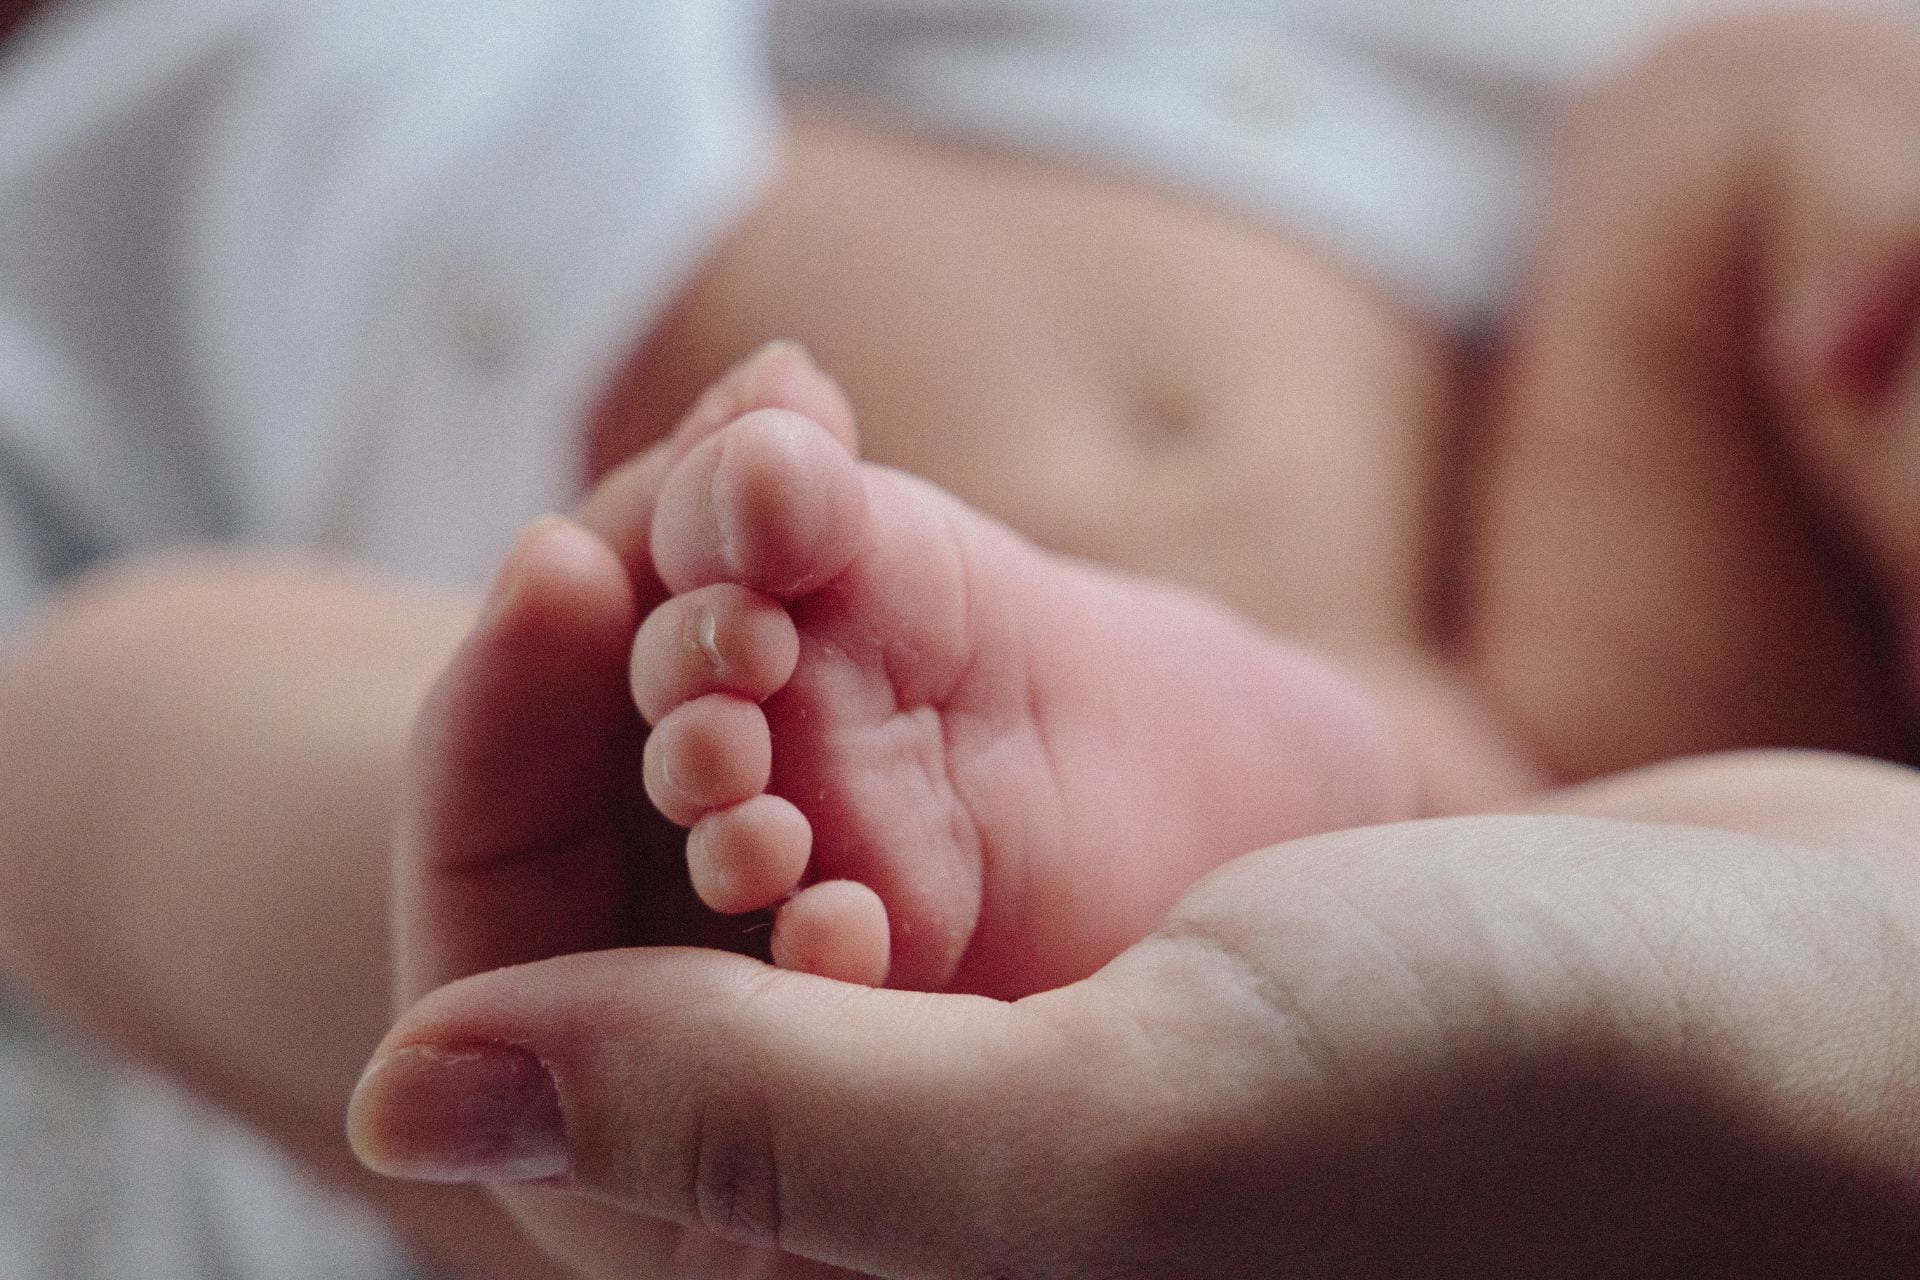 Hands holding newborn feet.